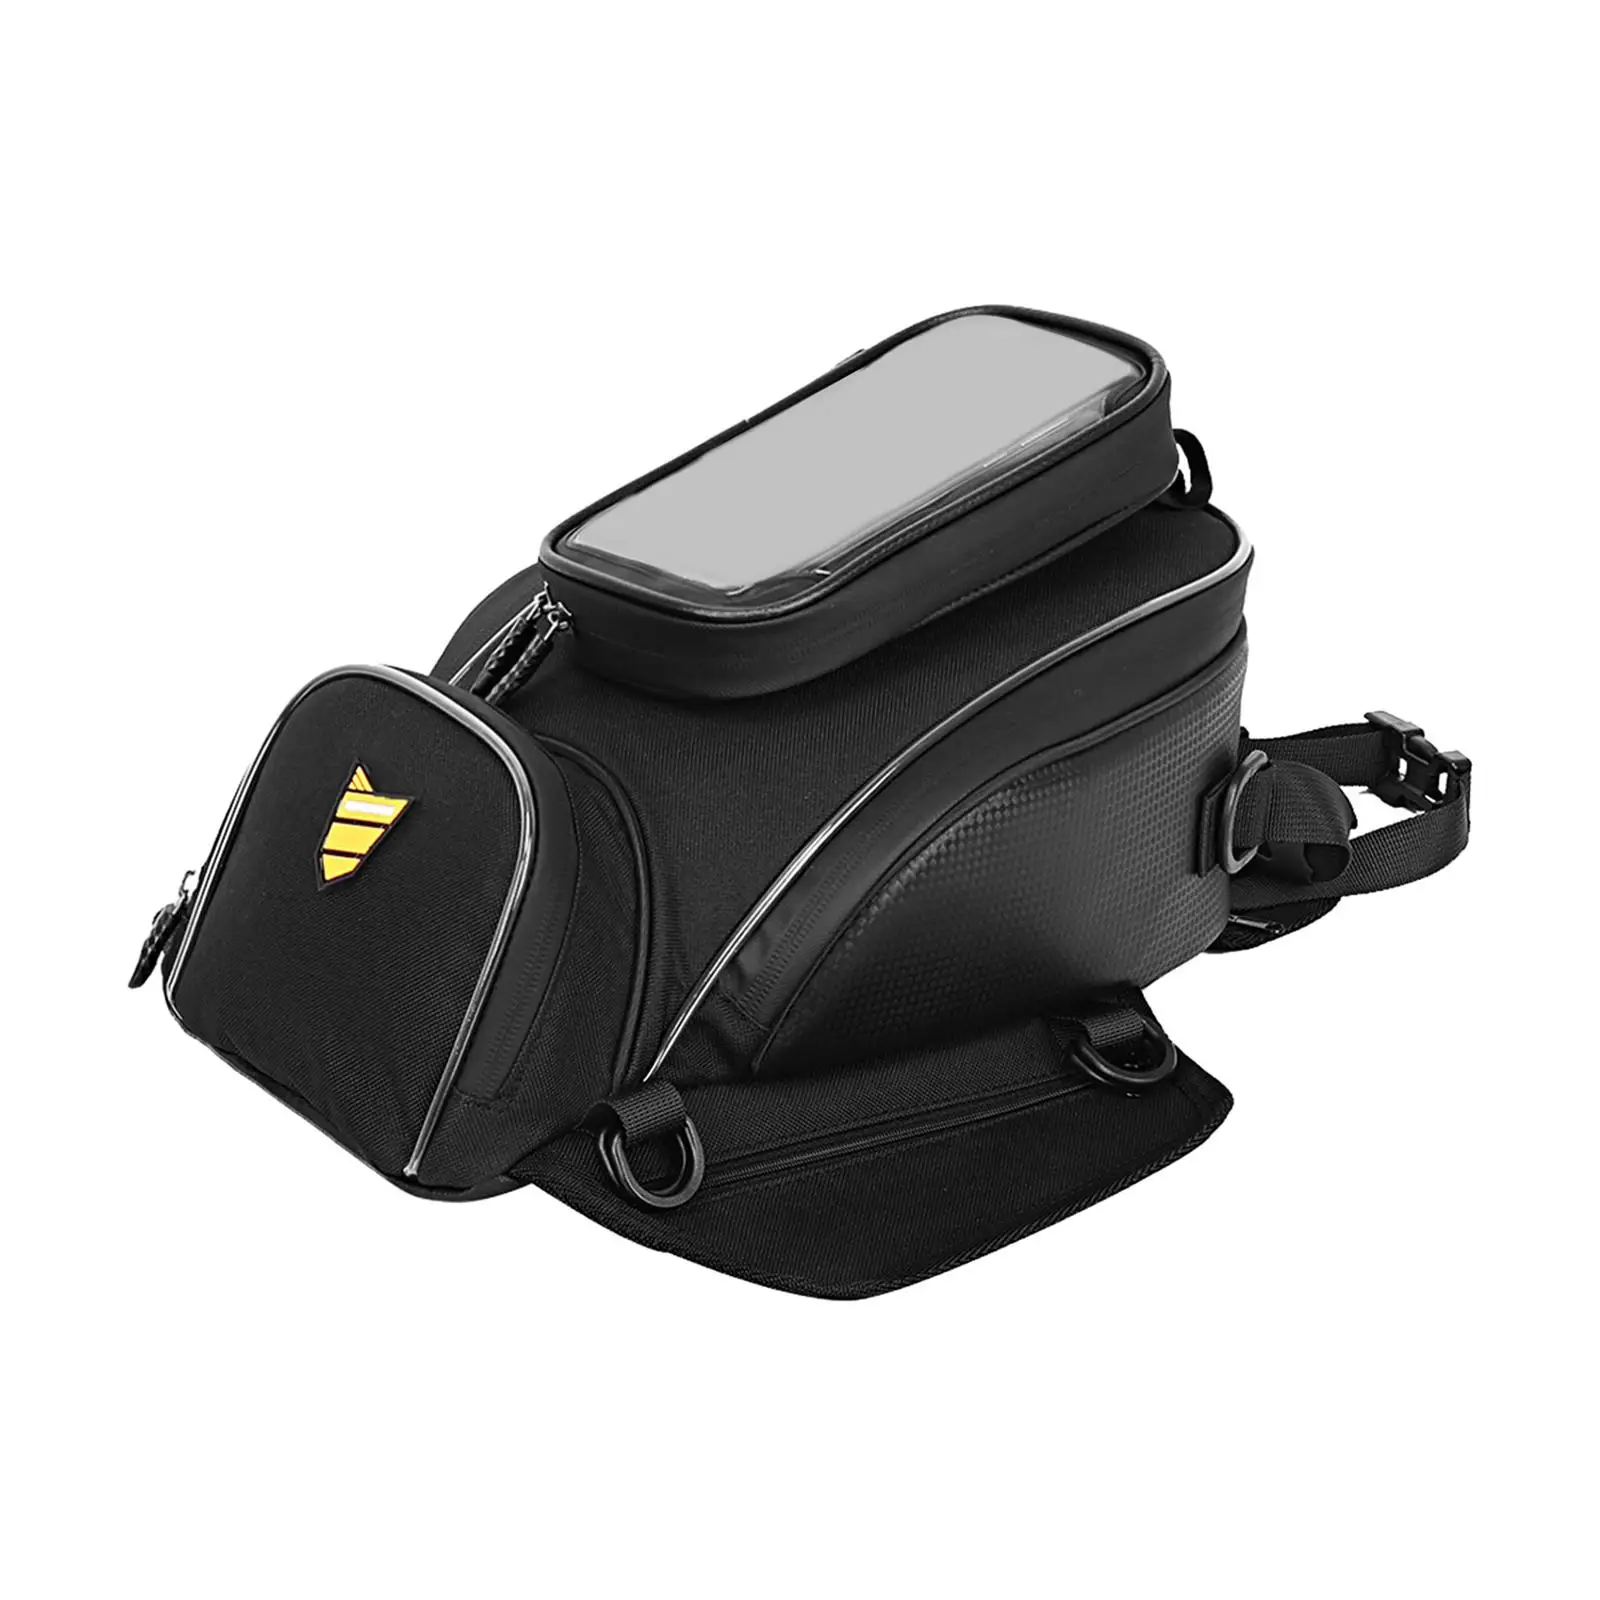 Universal Motorcycle Tank Bag Water Resistant wear Resistant Black